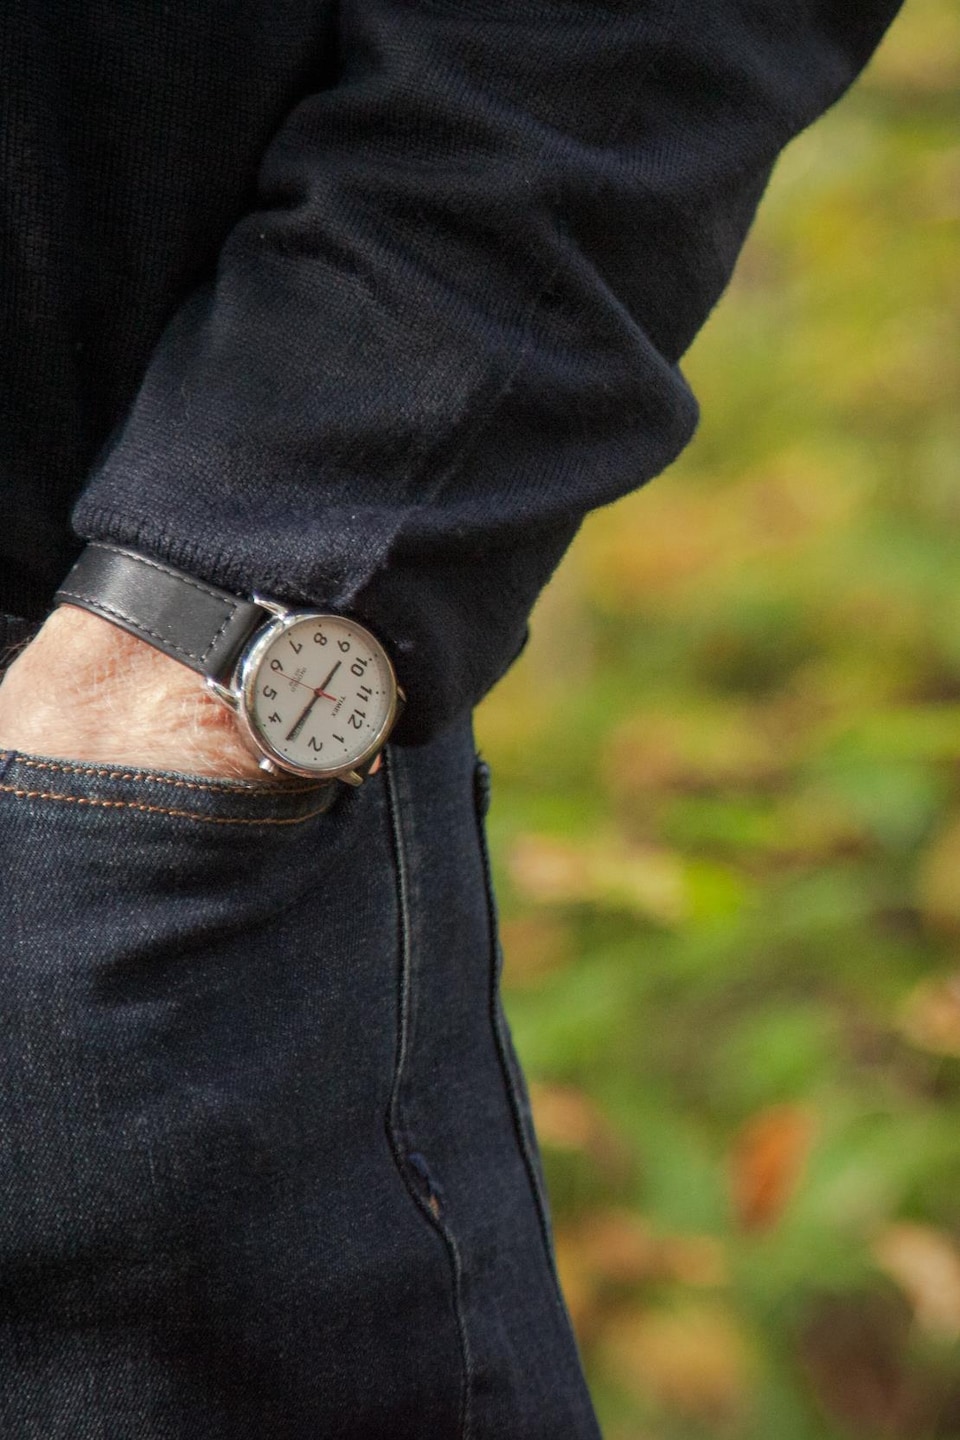 Gros plan sur la montre de Jean Bédard et sa main plongée dans sa poche
